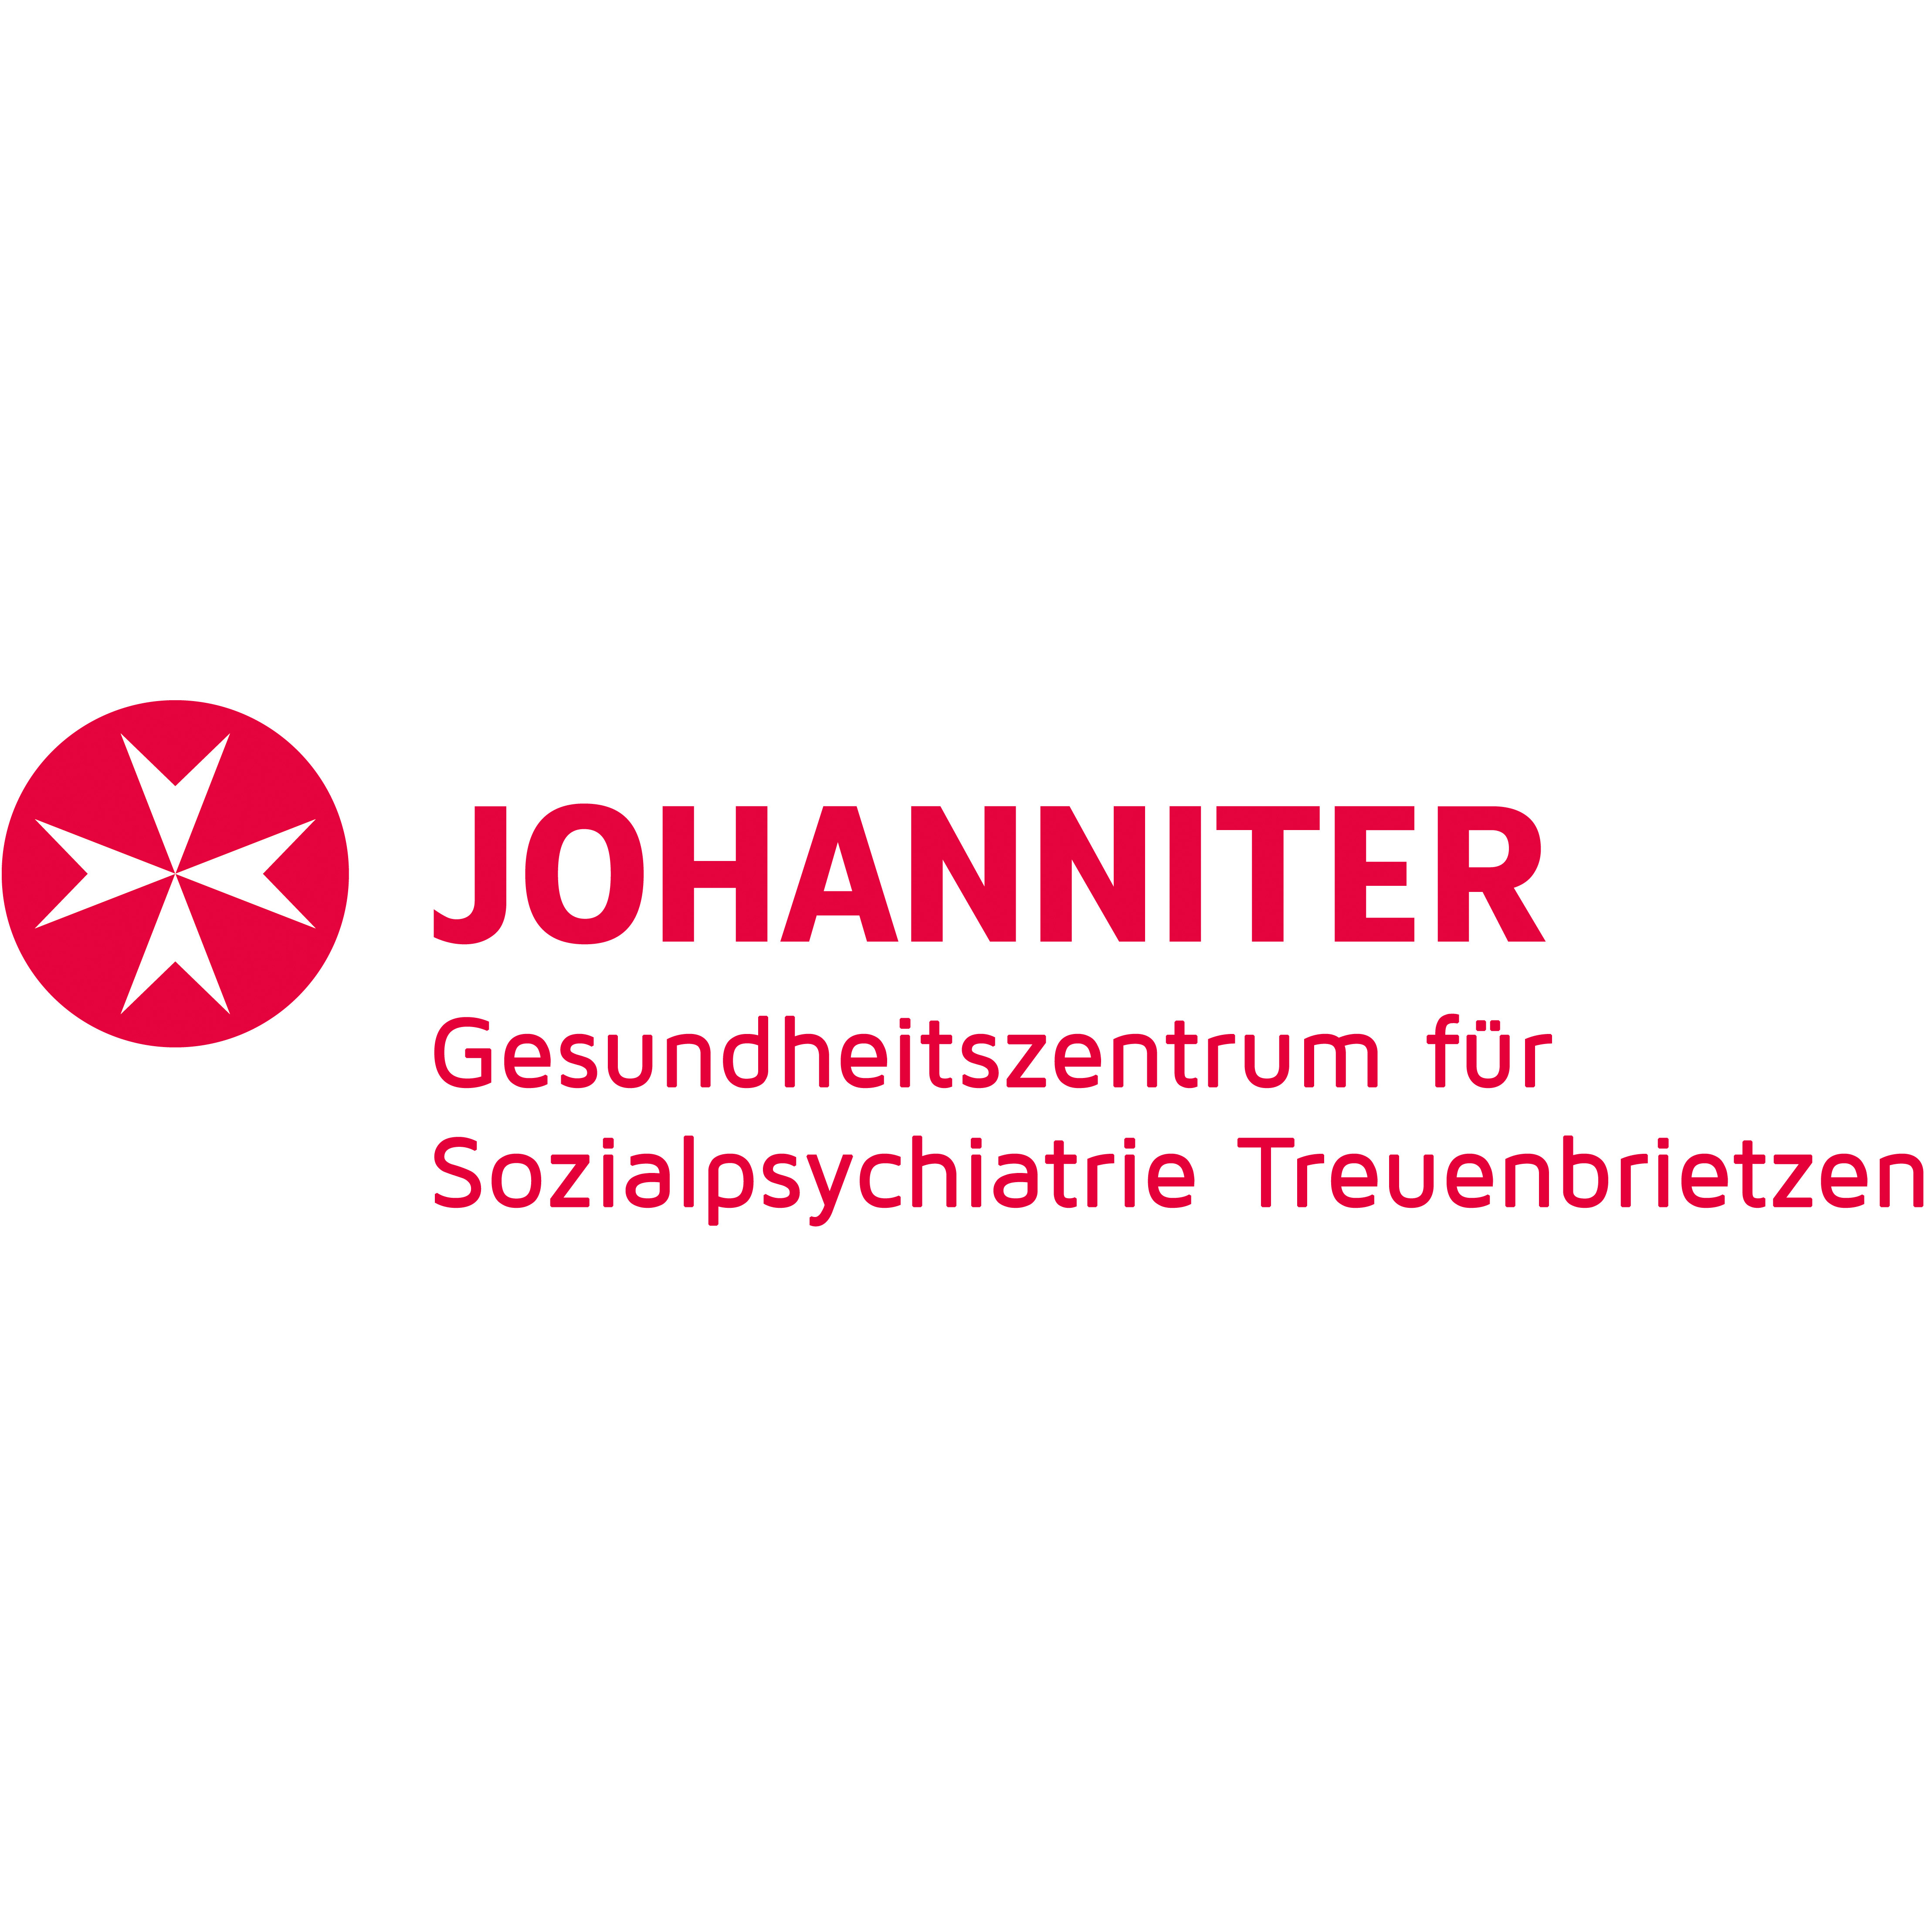 Johanniter-Gesundheitszentrum für Sozialpsychiatrie gGmbH in Treuenbrietzen - Logo